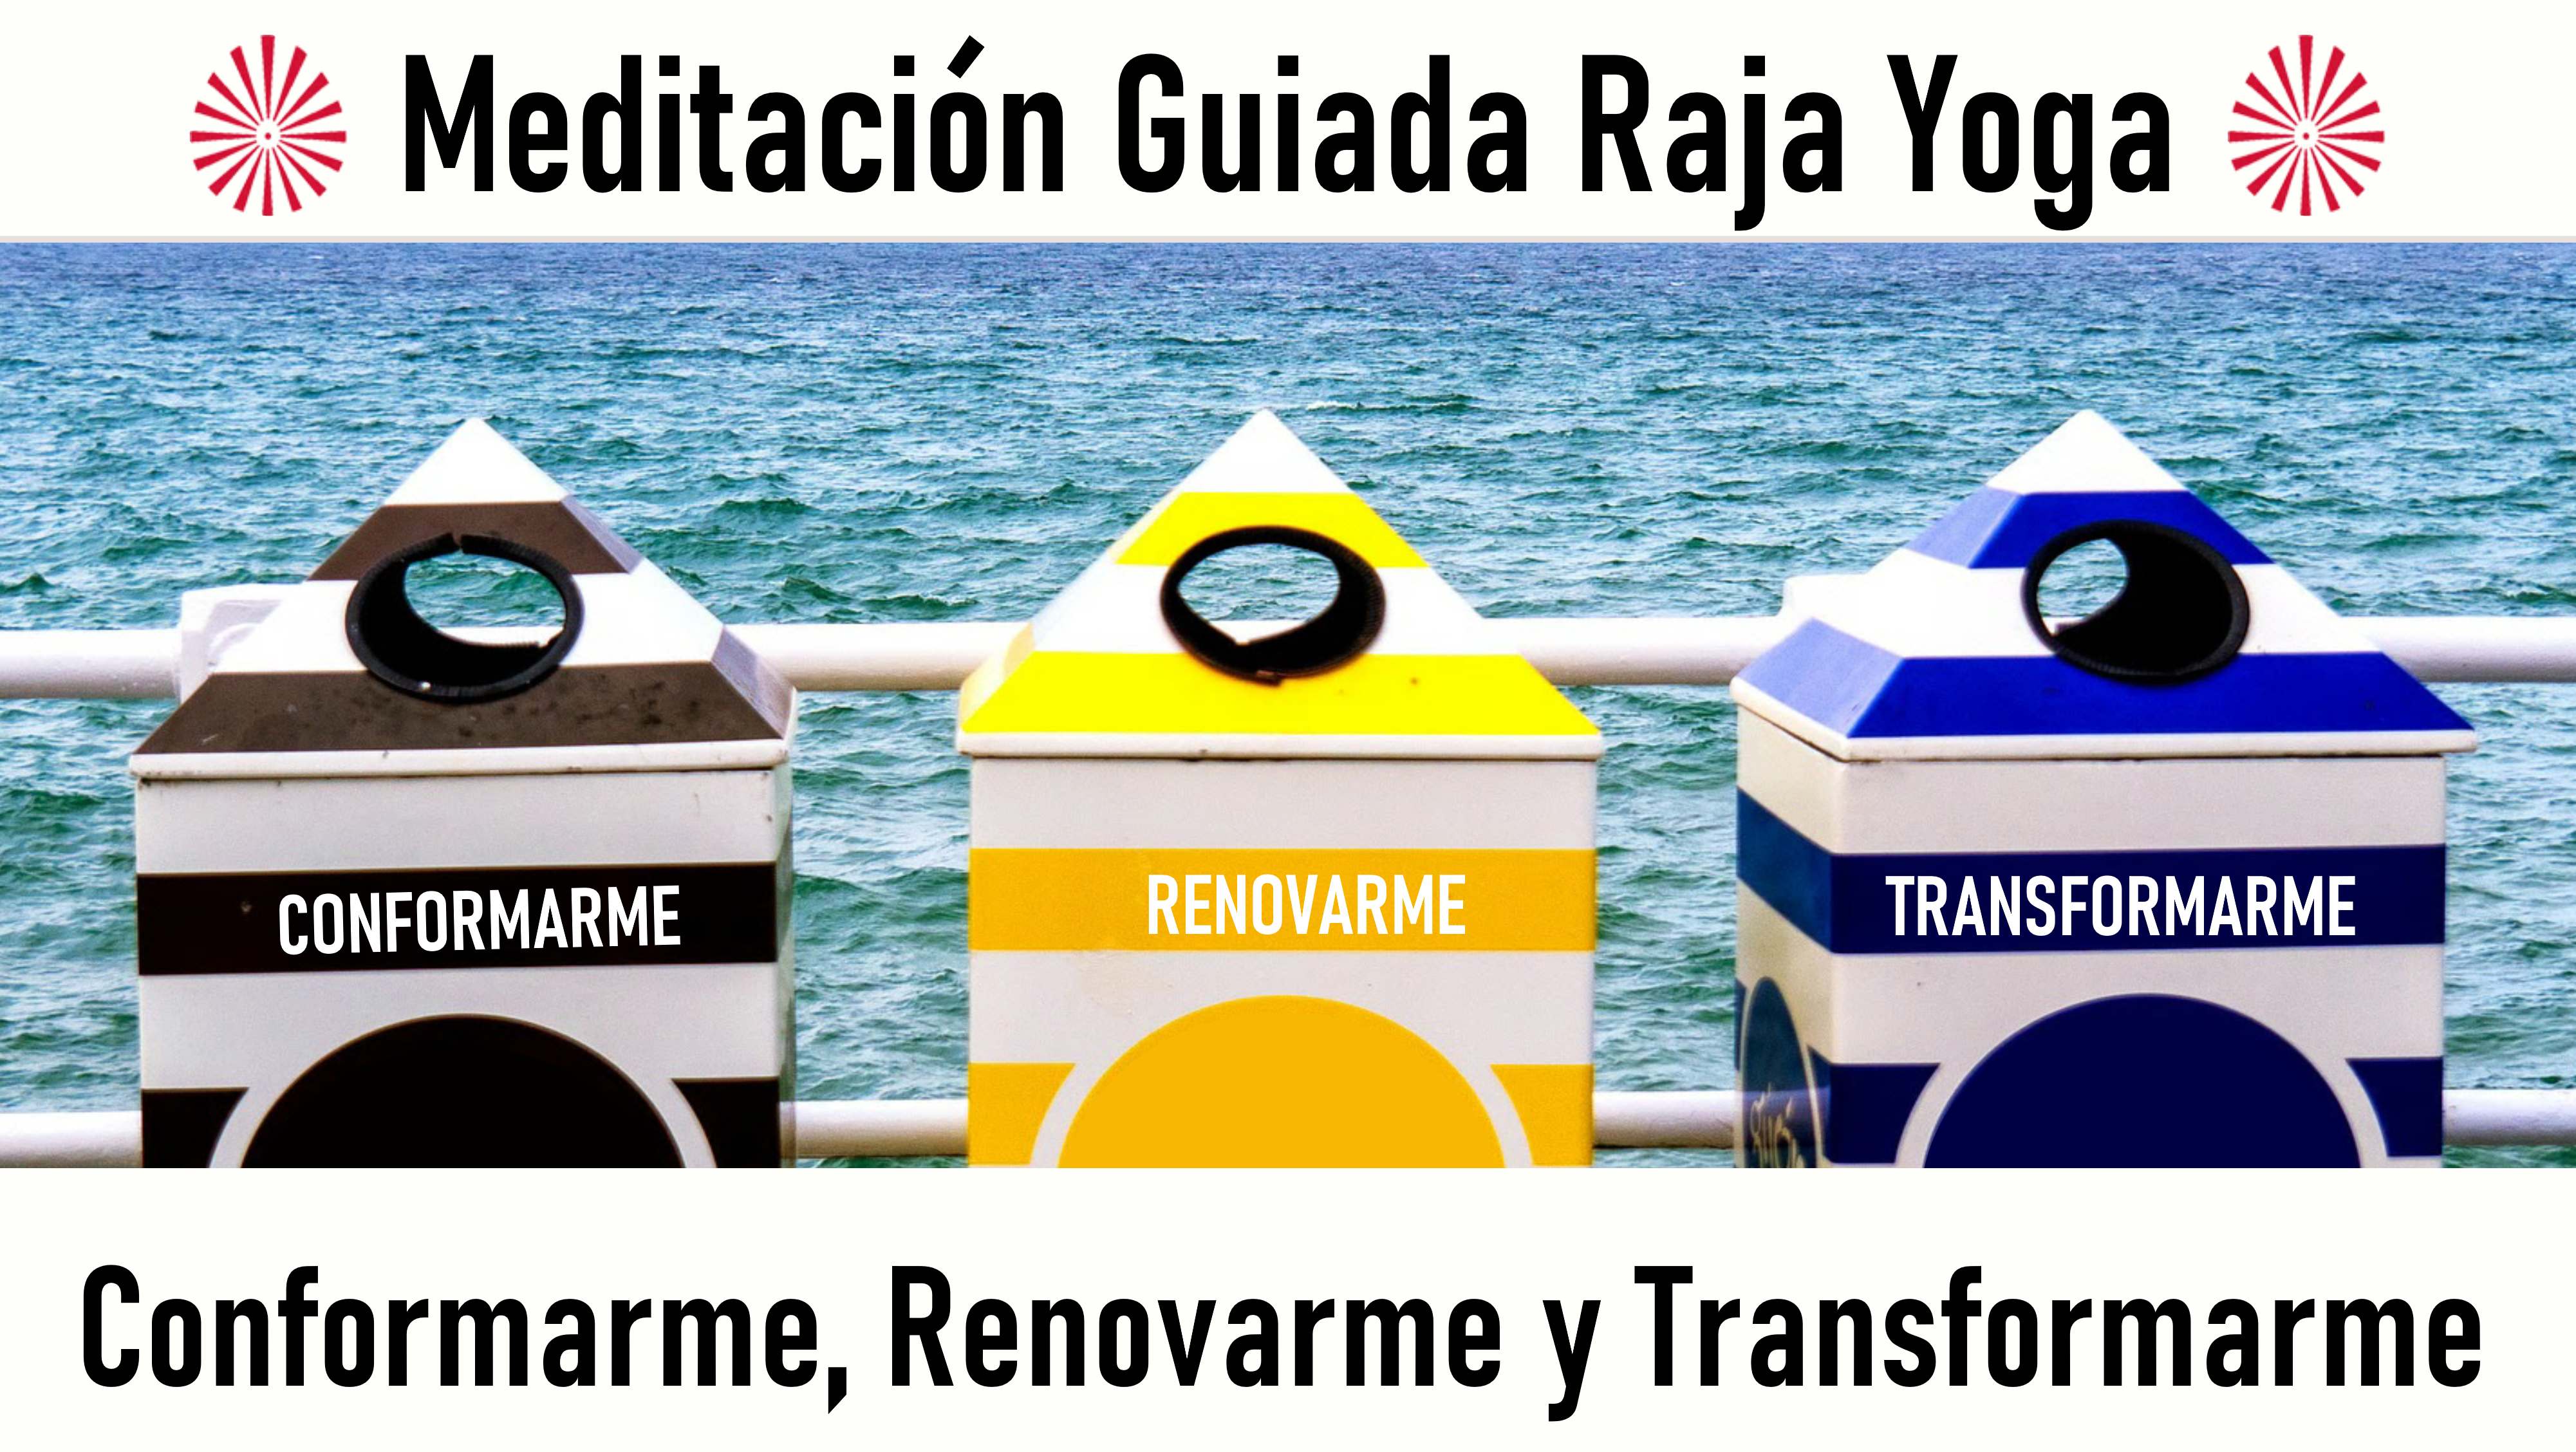 20 Agosto 2020  Meditación guiada: Conformarme, renovarme y transformar